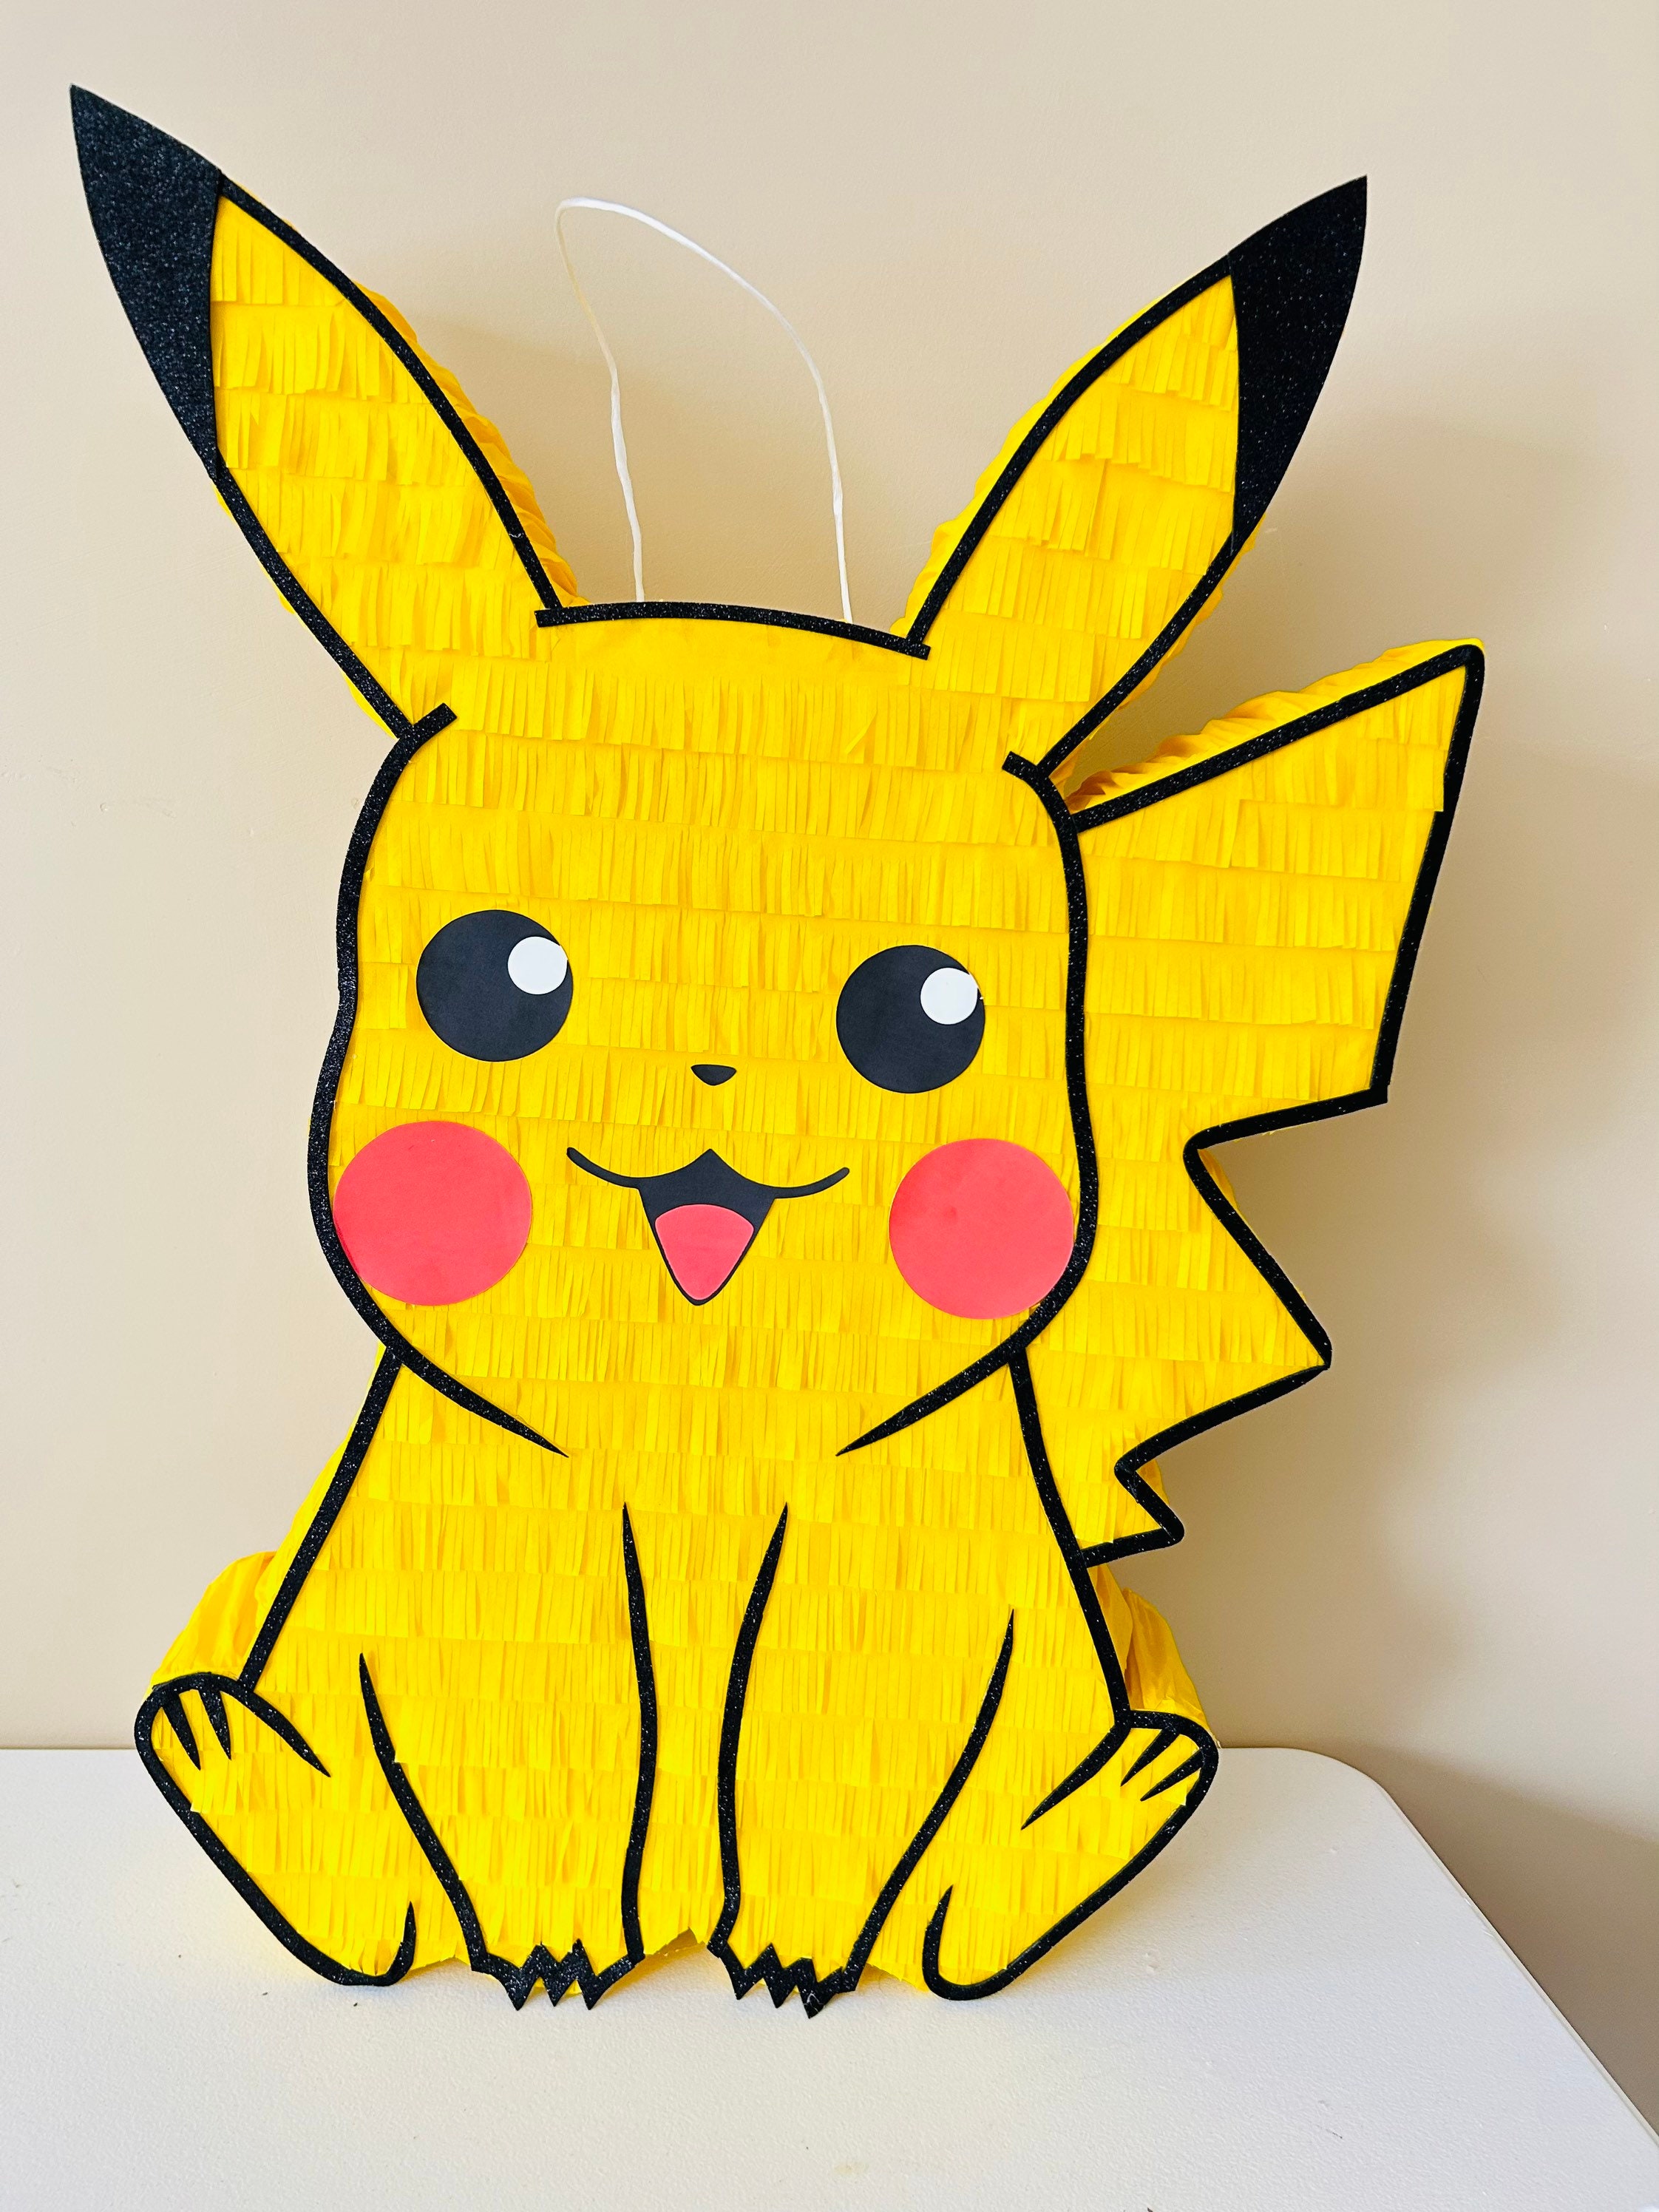 Piñata : Pikachu pour les 7 ans d'Anakyne - Le blog de diddlindsey